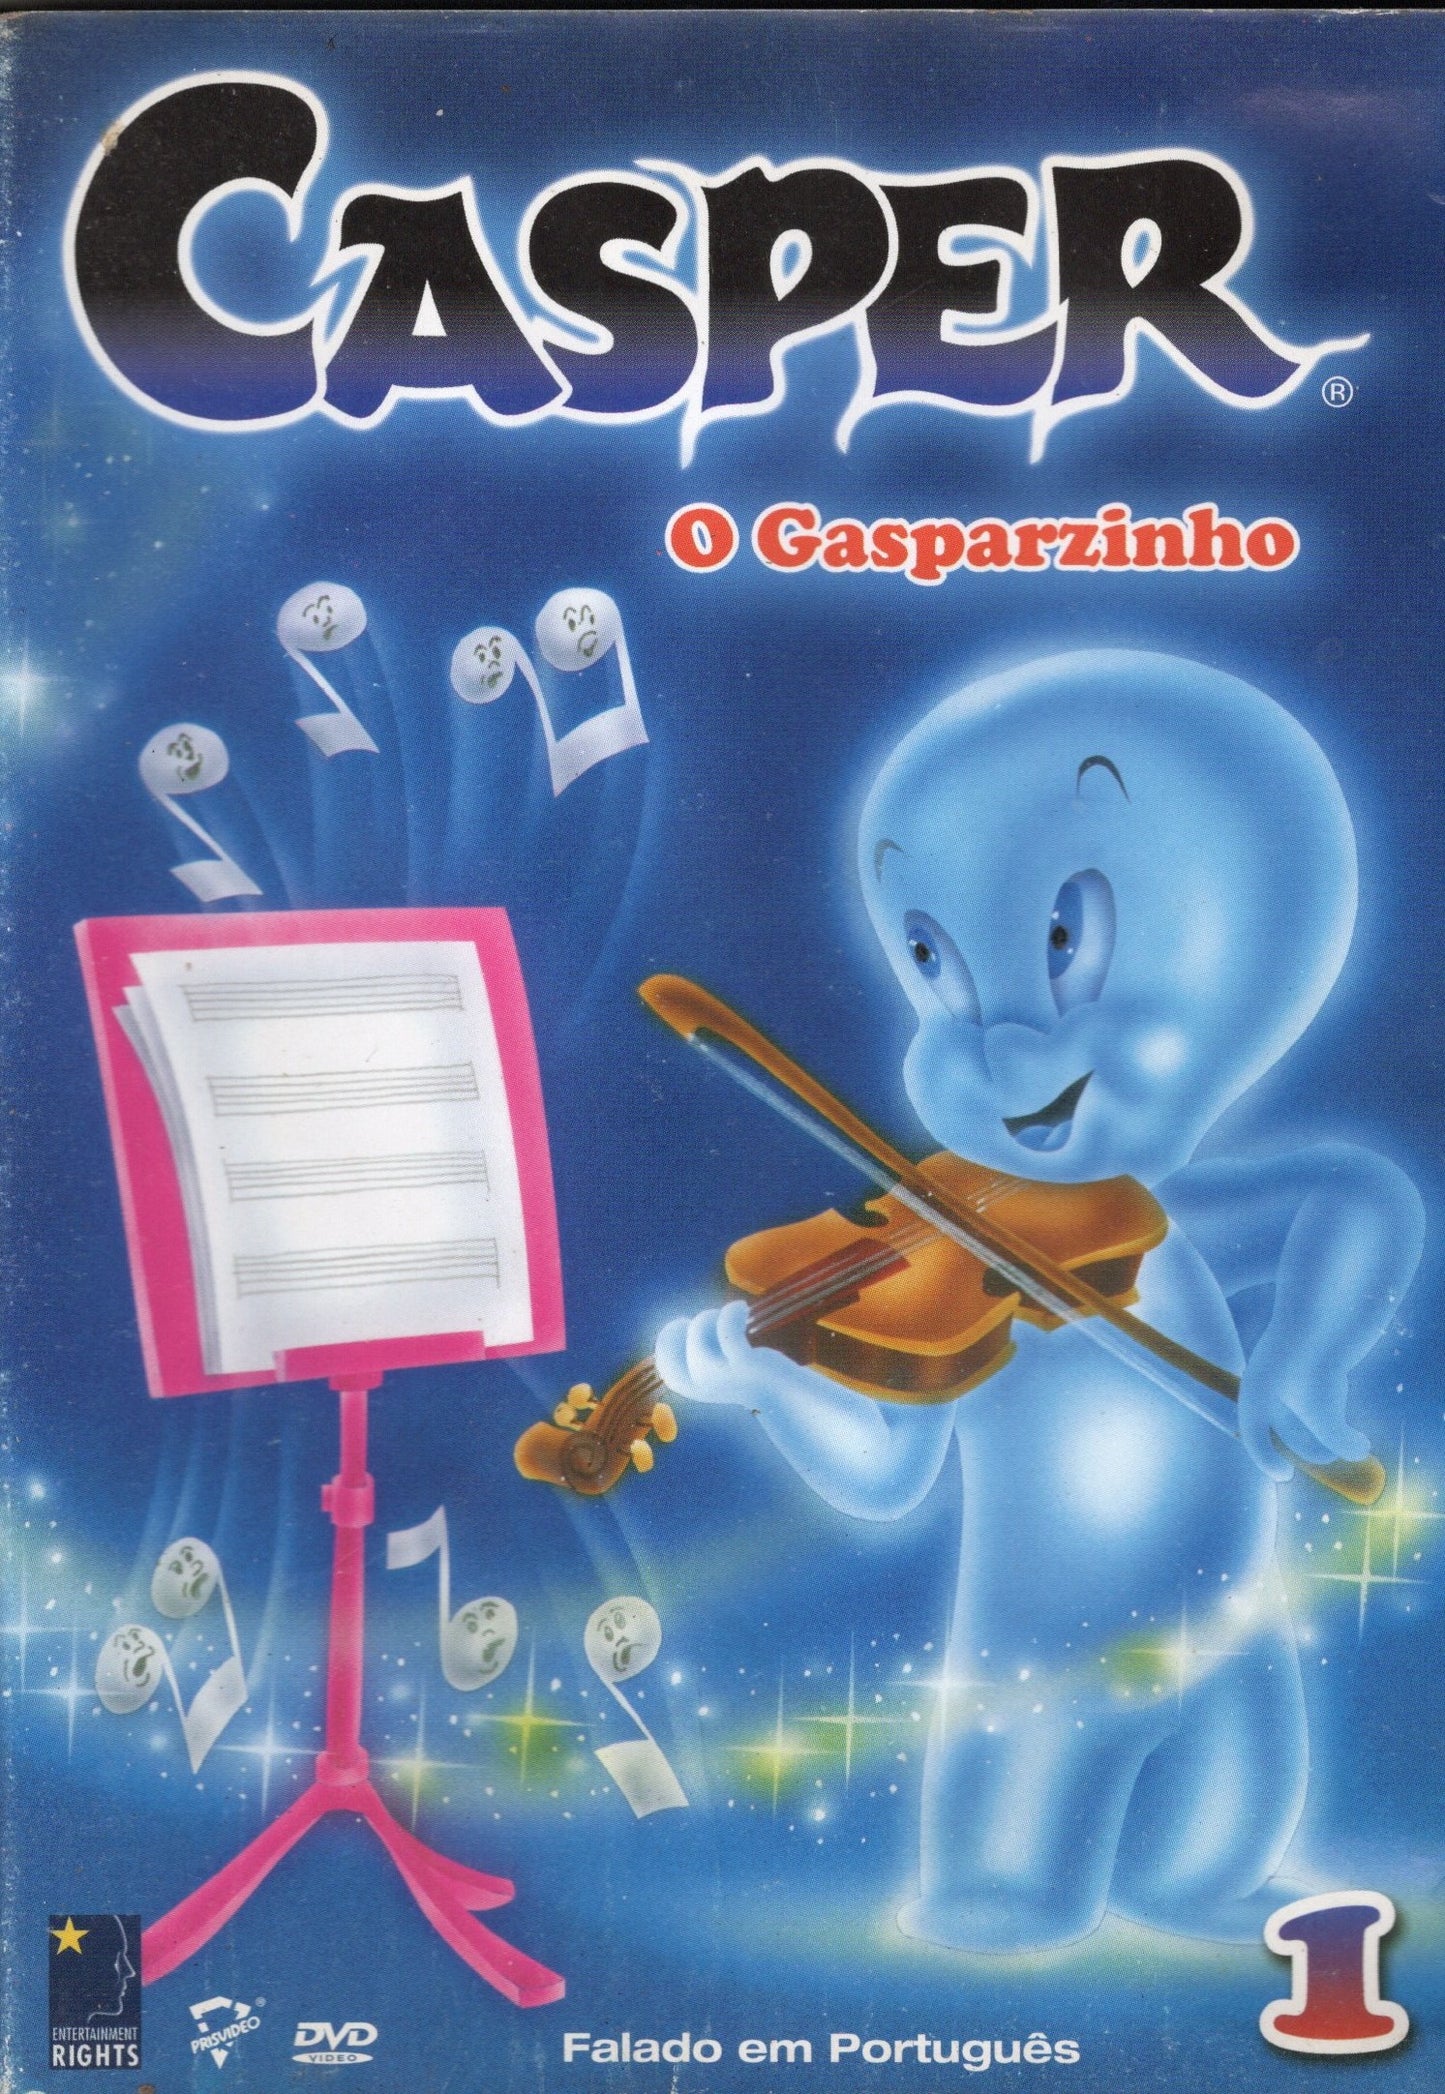 DVD CASPER O GASPARZINHO #1 - USADO